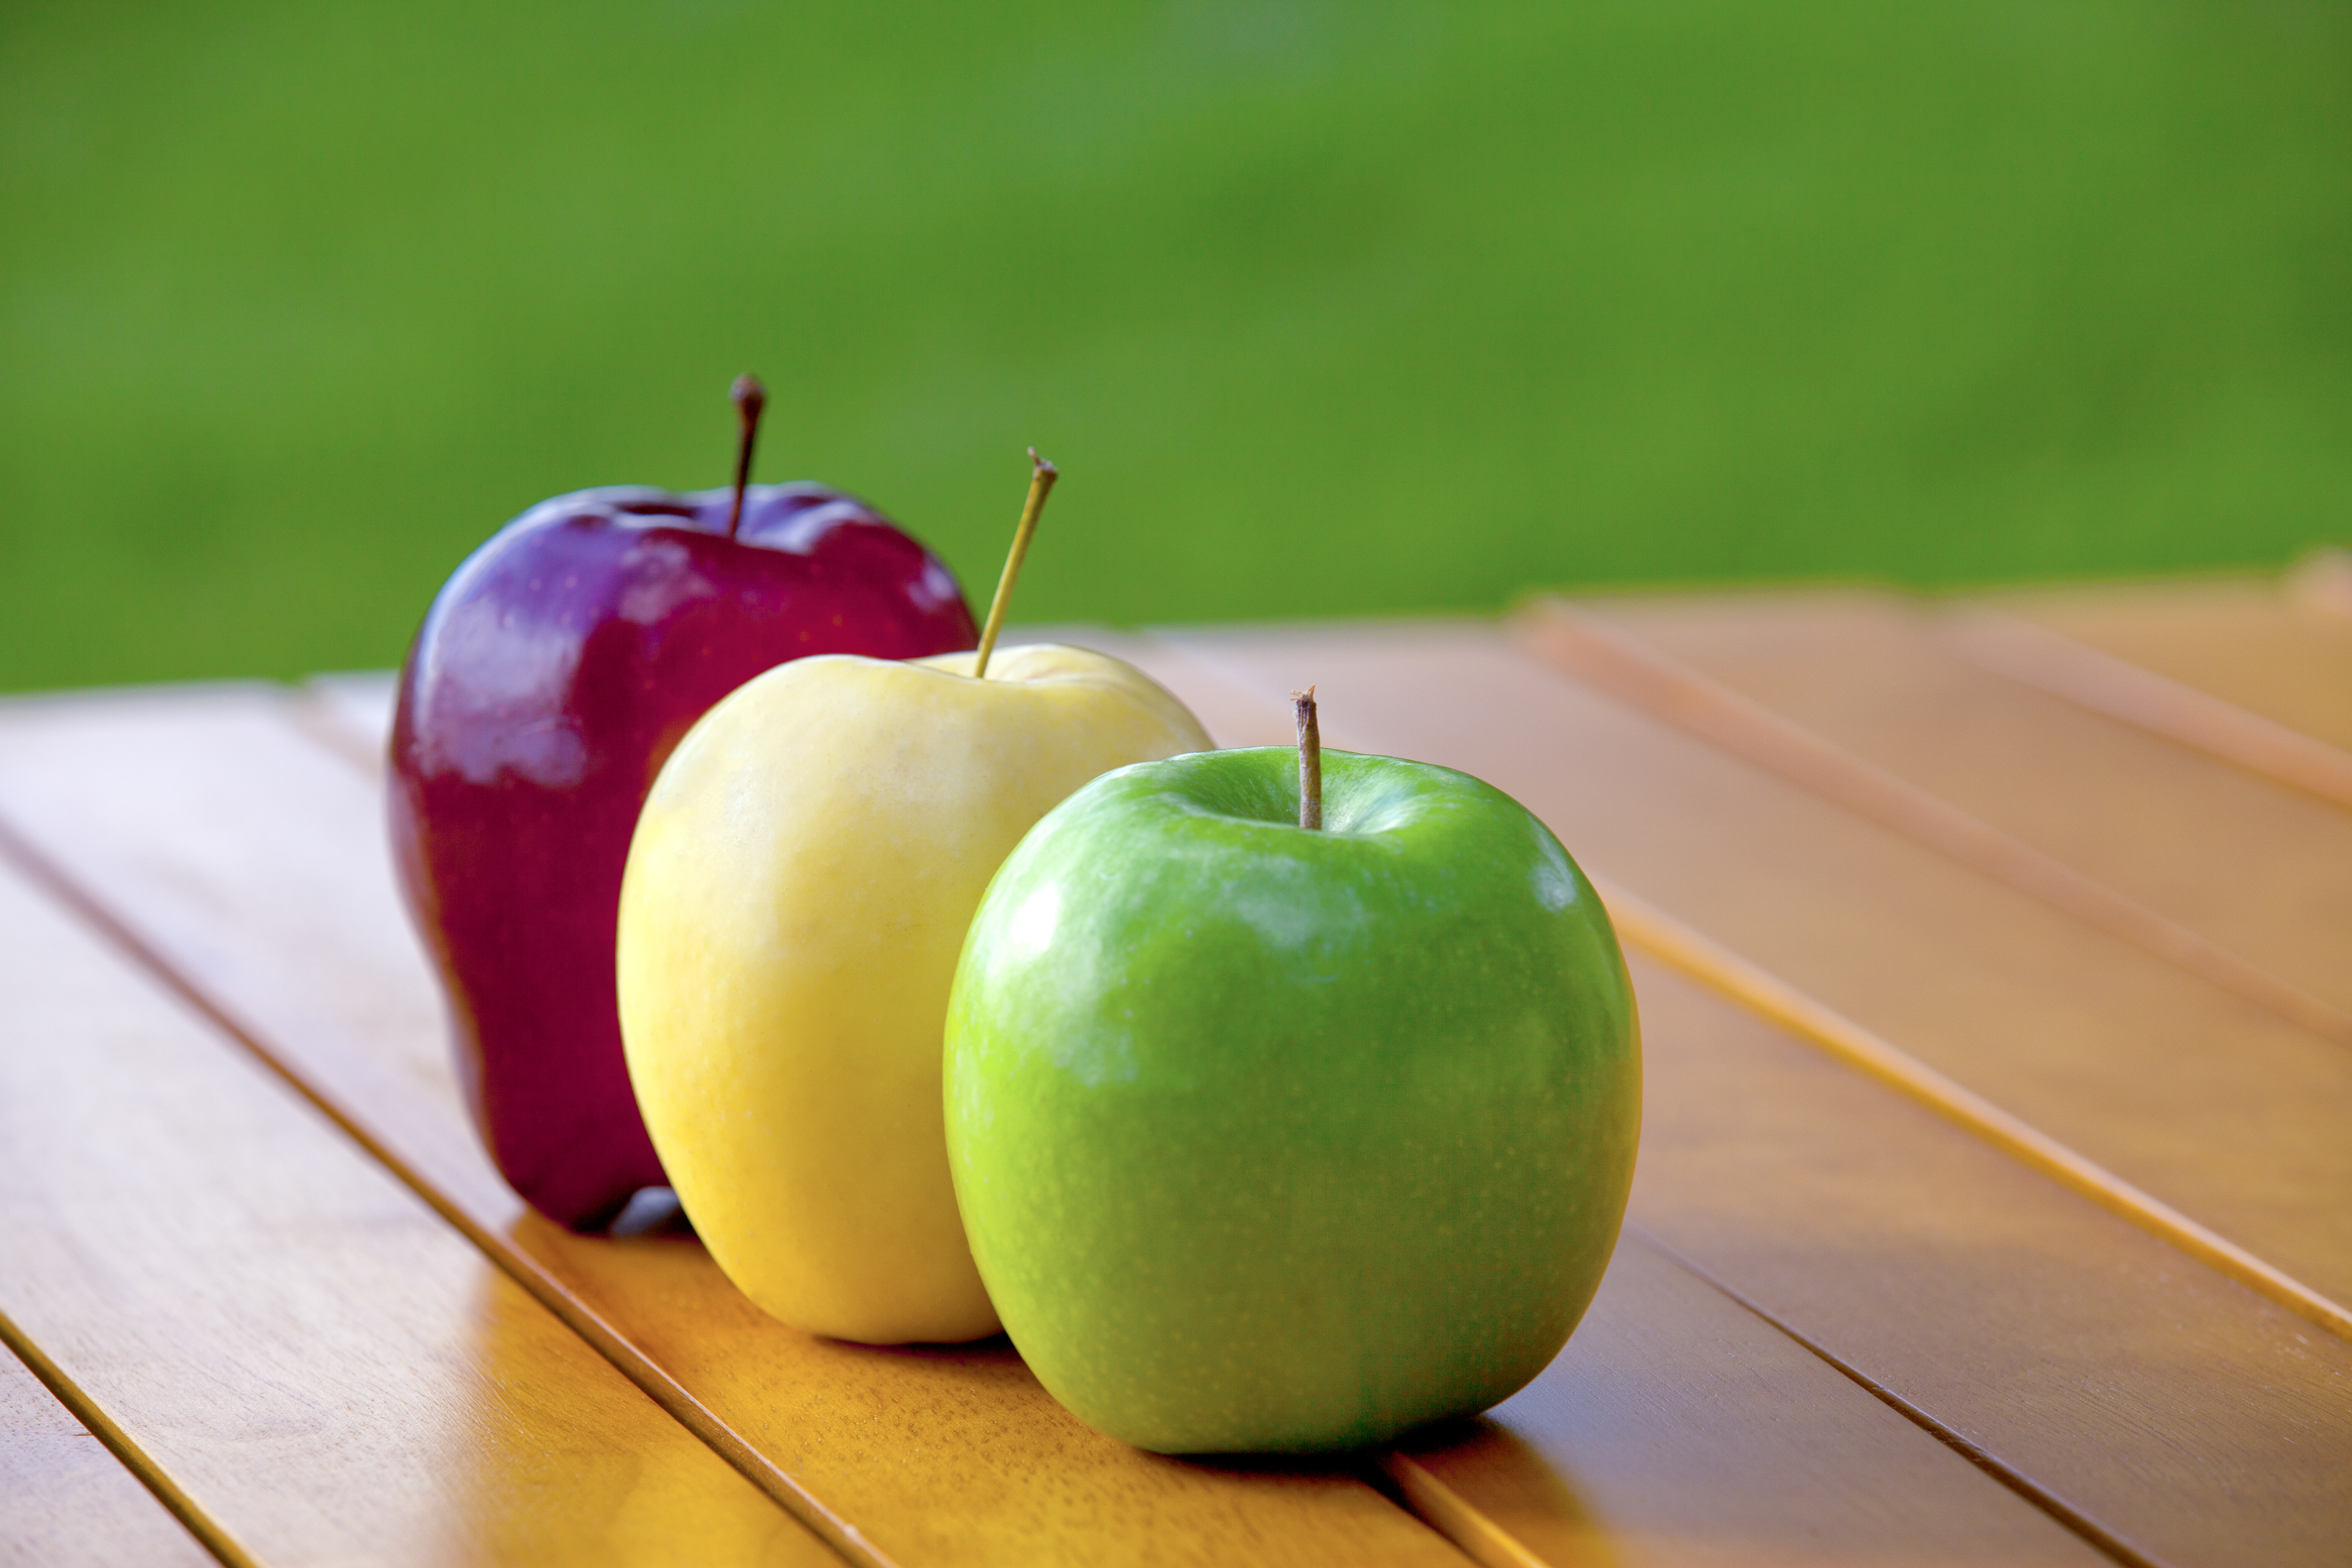 Le mele in Italia: tante e buonissime. Quali sono?